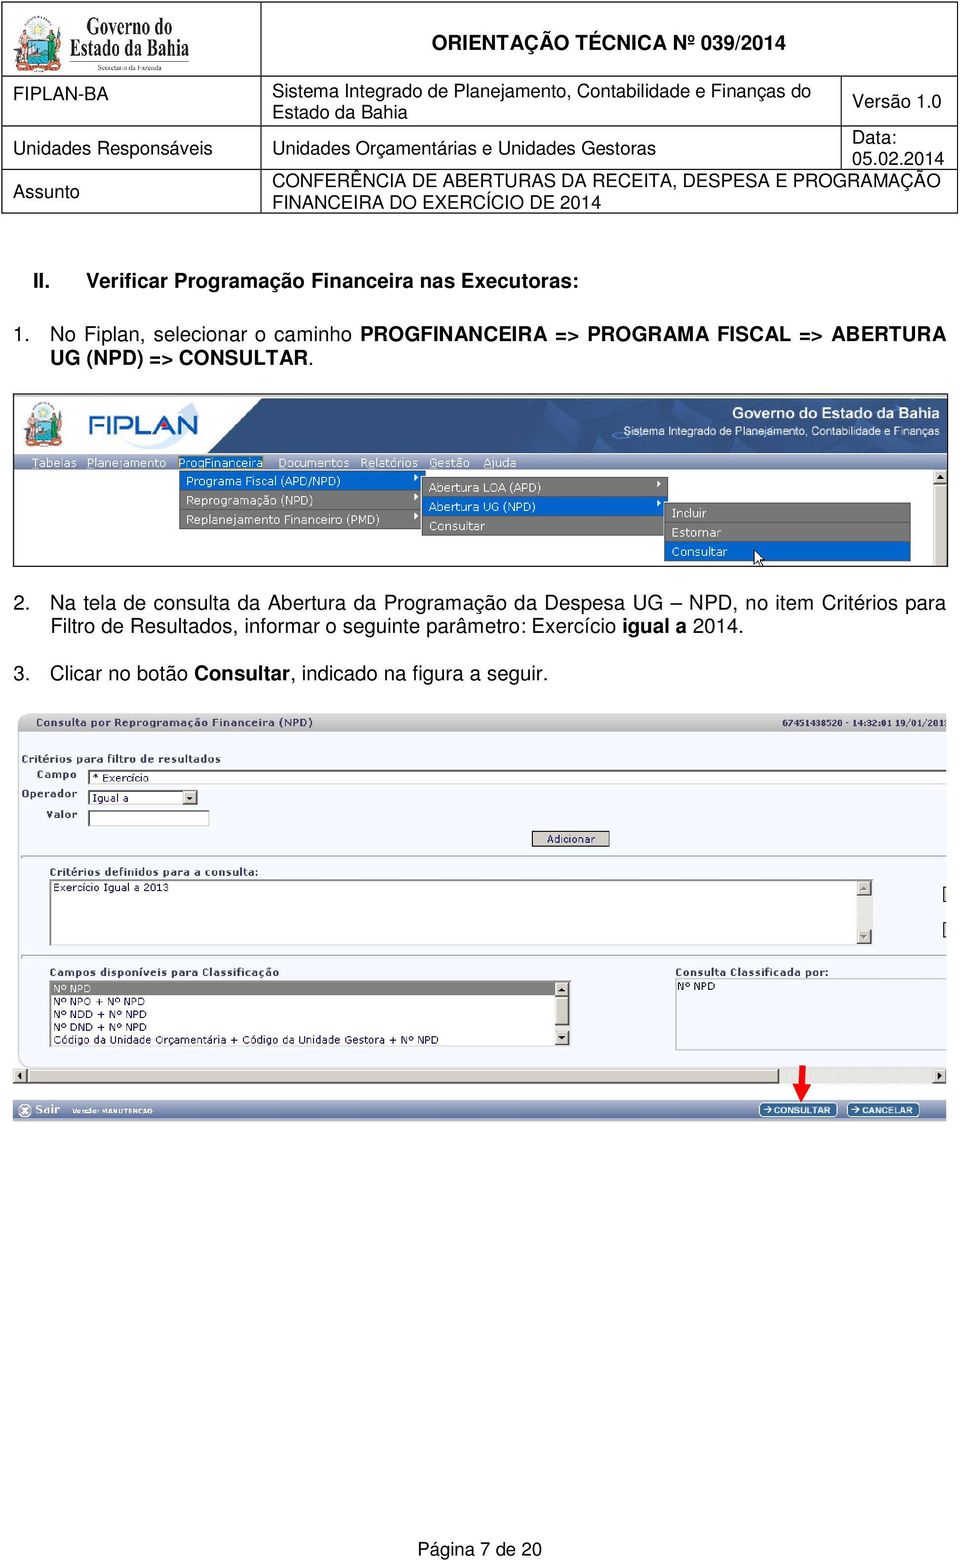 2. Na tela de consulta da Abertura da Programação da Despesa UG NPD, no item Critérios para Filtro